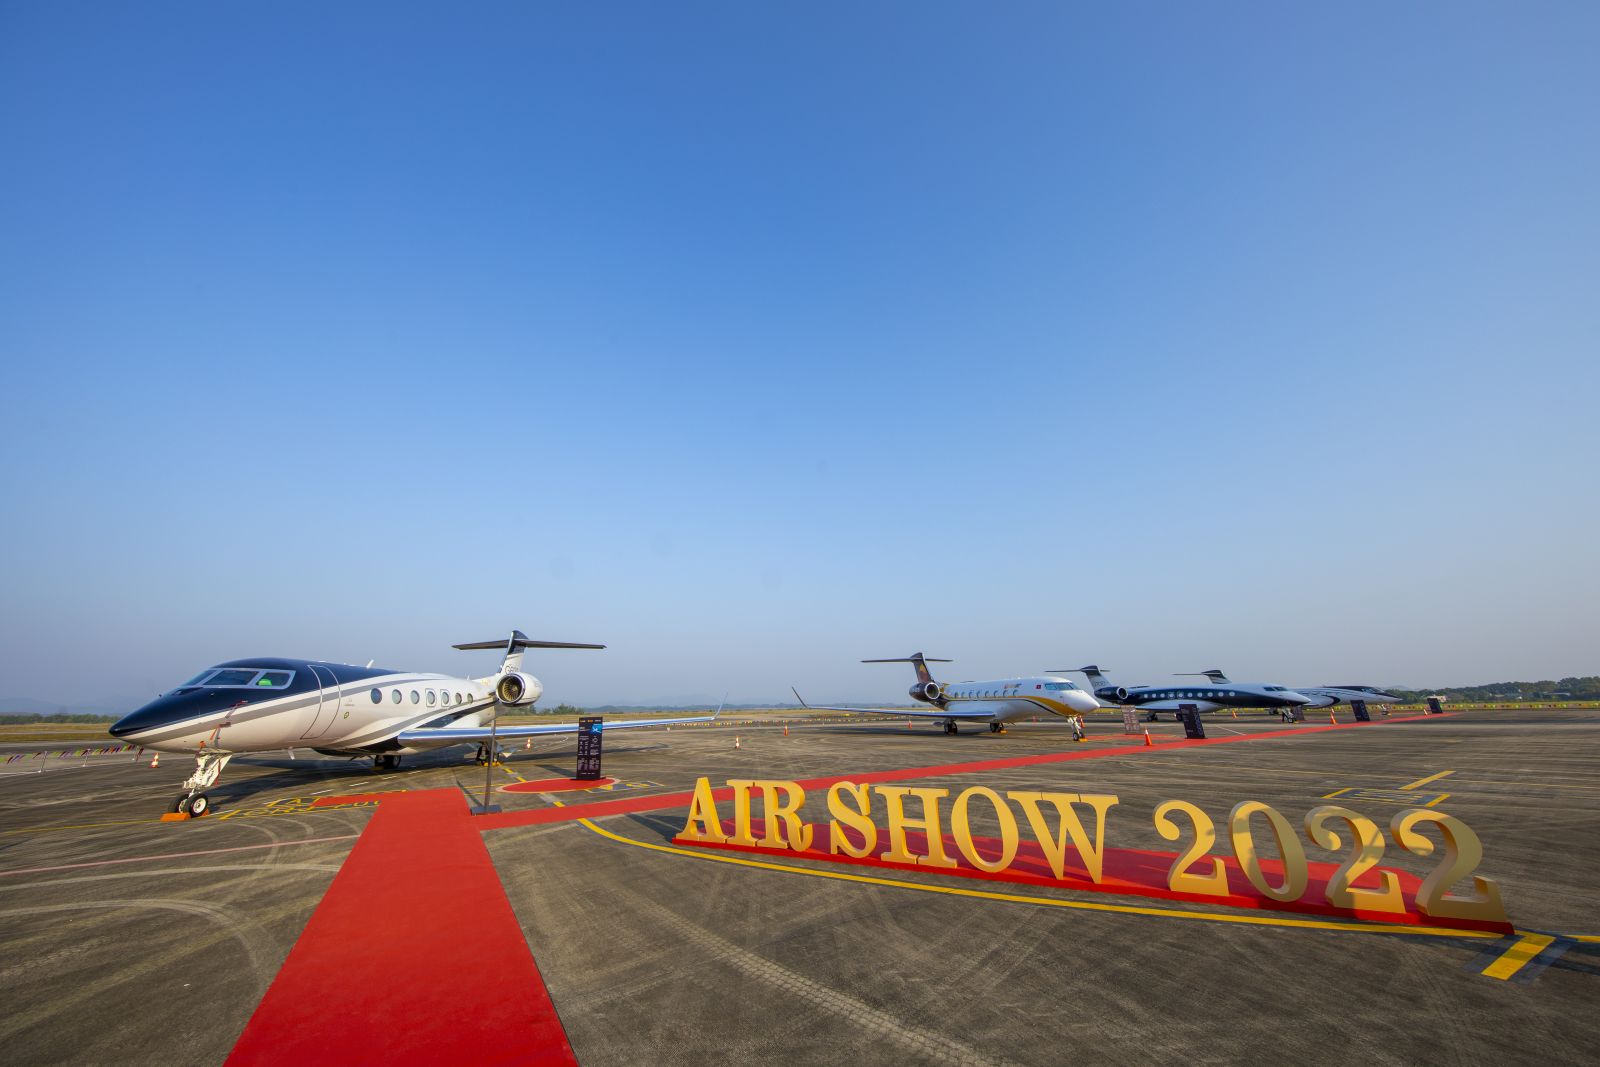 Airshow 2022: Hàng không 5 sao và bức tranh điểm đến sang trọng mới của thế giới